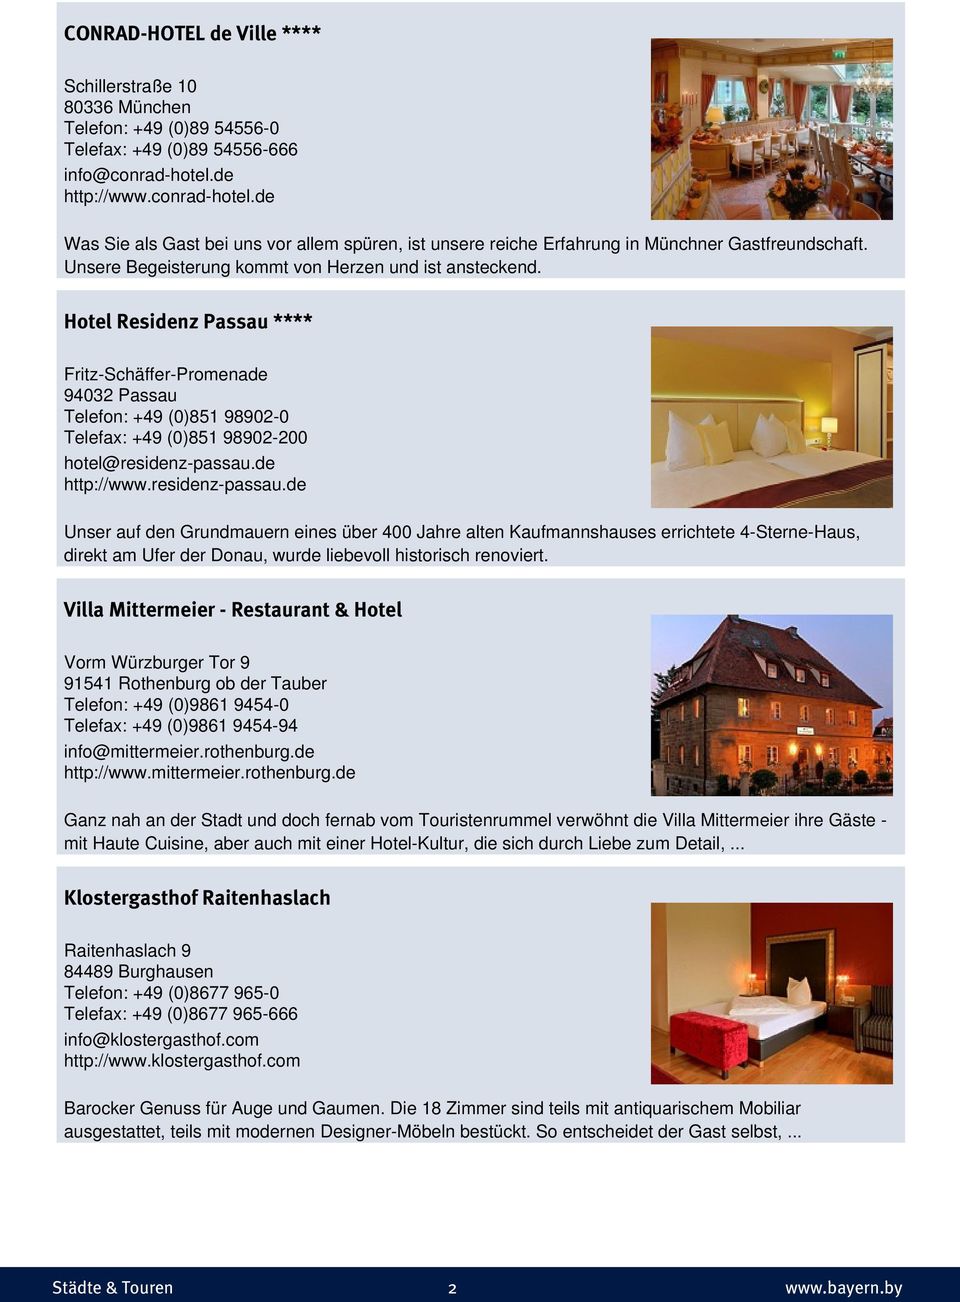 Hotel Residenz Passau **** Fritz-Schäffer-Promenade 94032 Passau Telefon: +49 (0)851 98902-0 Telefax: +49 (0)851 98902-200 hotel@residenz-passau.